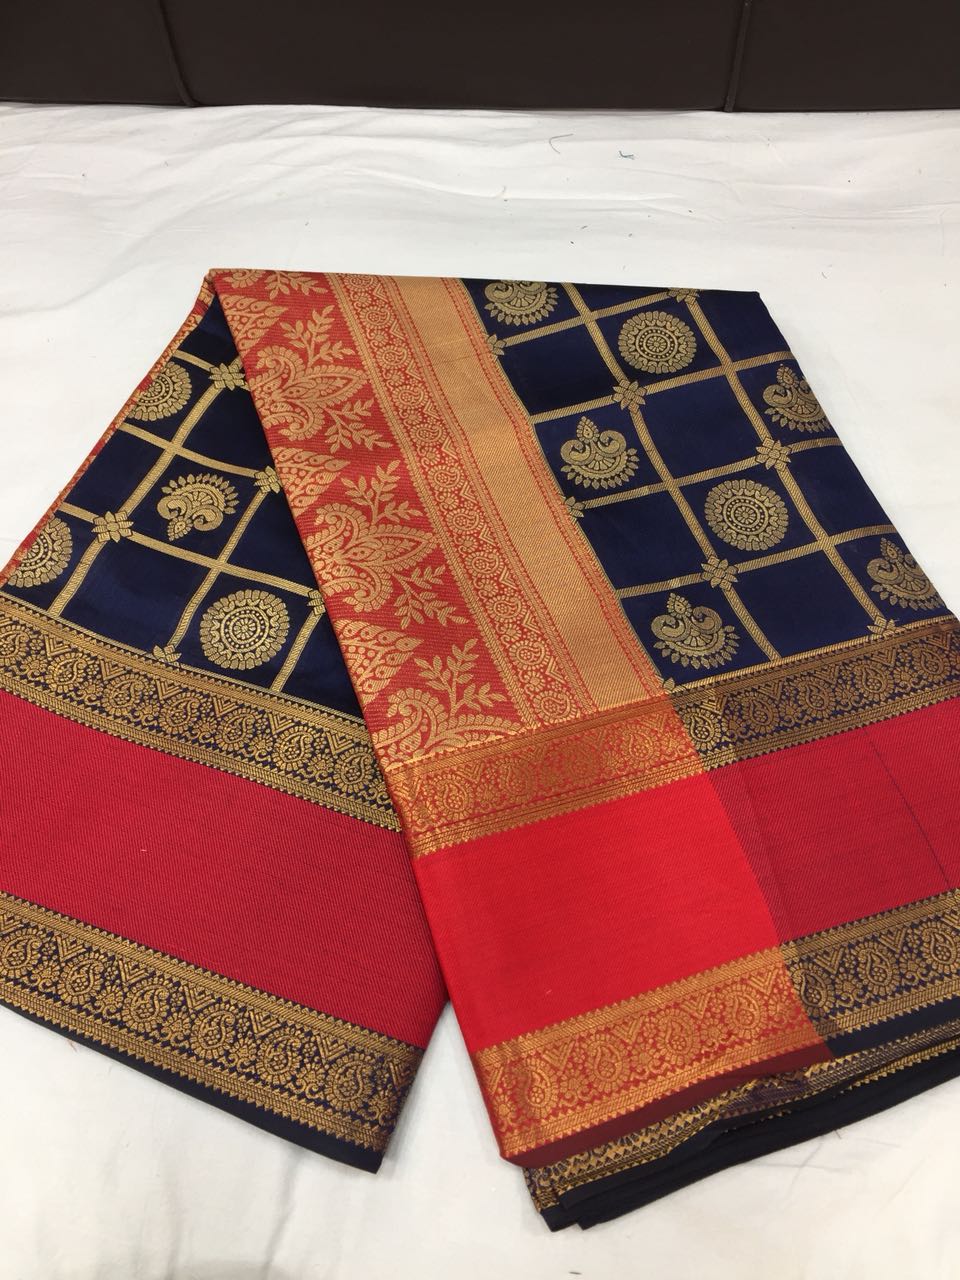 Princess Ruby Banarasi Silk Saree BNS010 black and red coloured saree with grand work